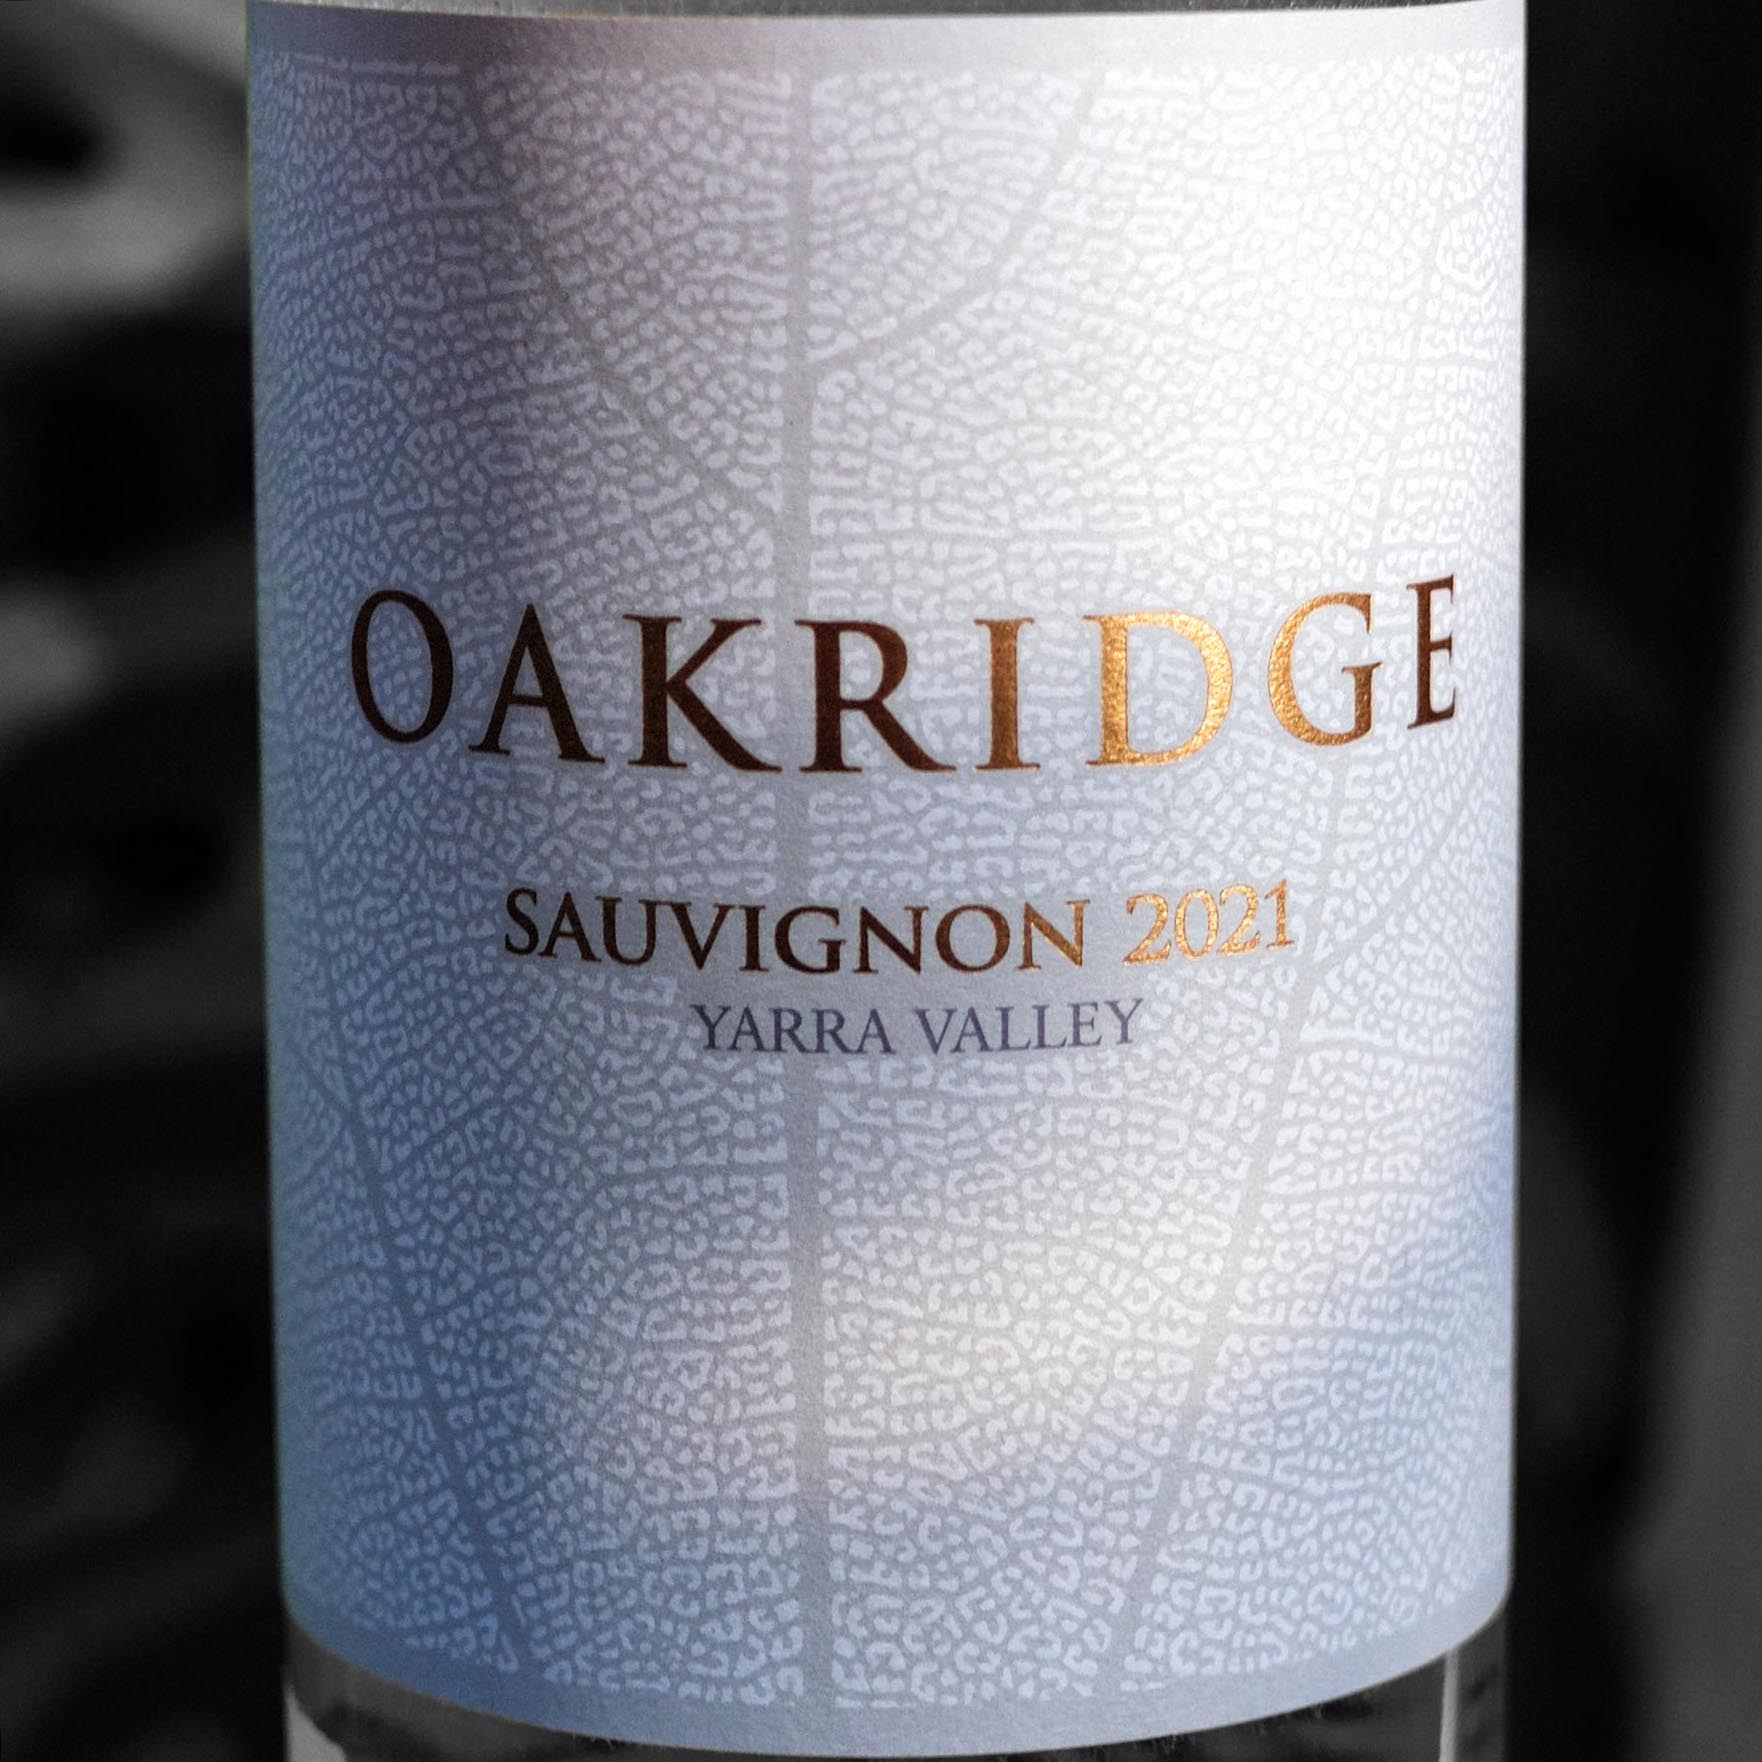 Oakridge Sauvignon 2021 Yarra Valley, Vic